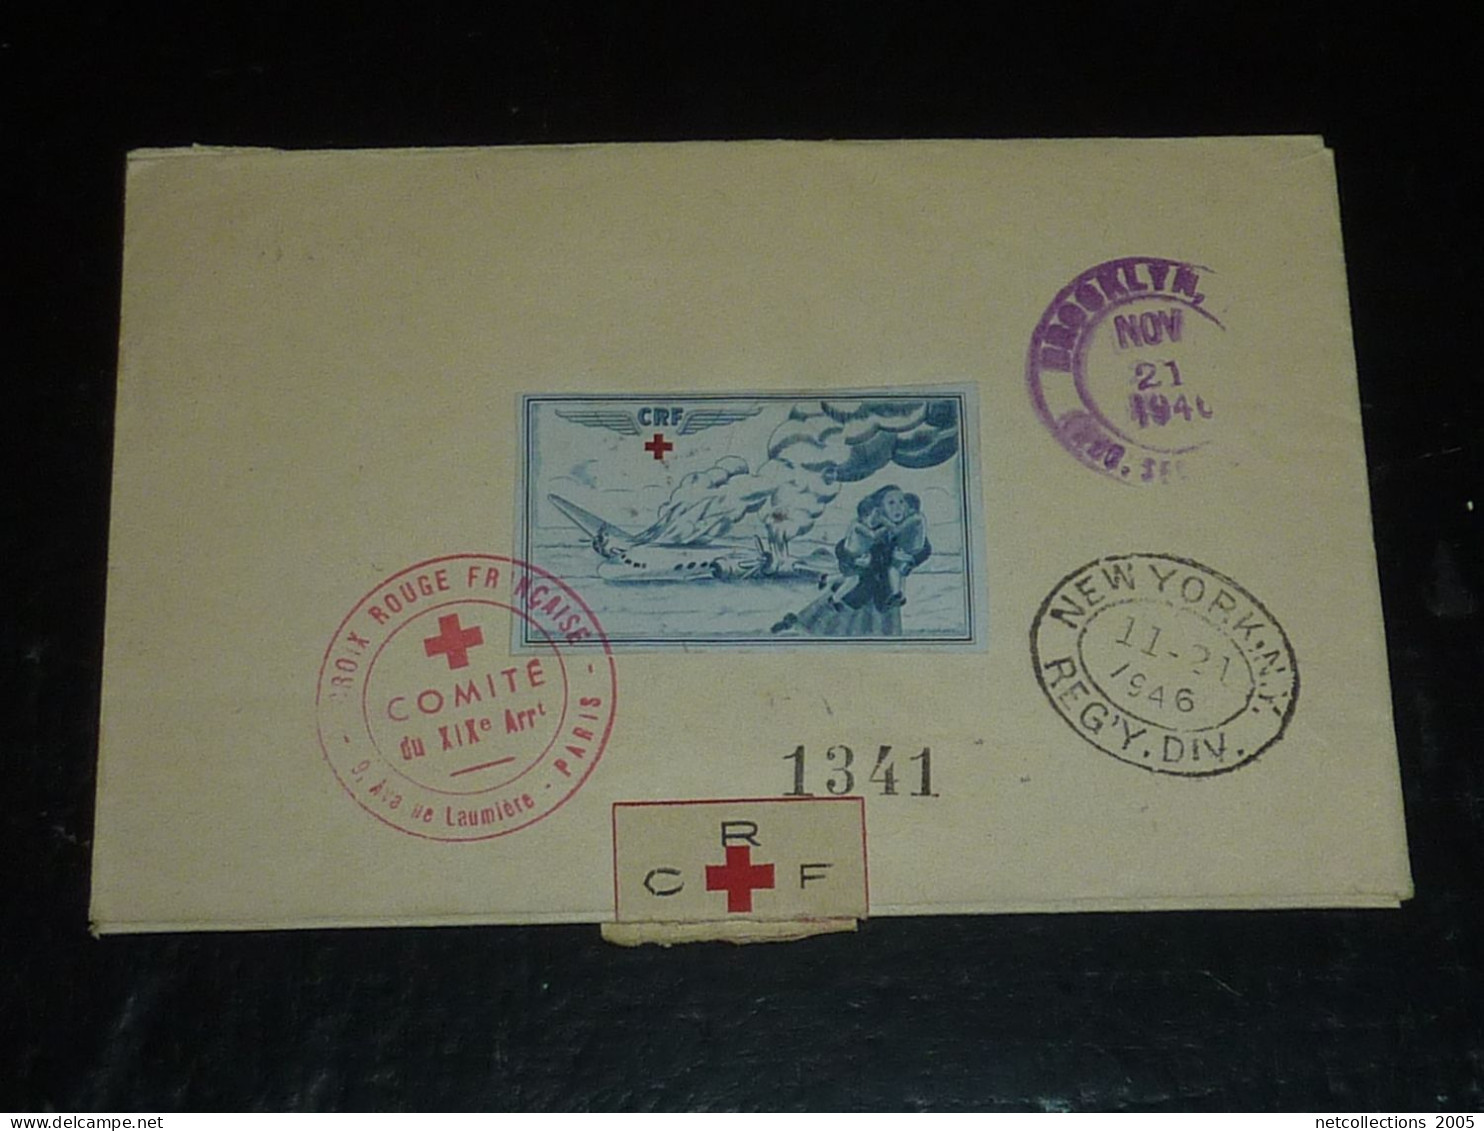 TOUR DU MONDE; CROIX ROUGE - PARIS NEW-YORK 18/11/1946 AU 21/11/1946 - NEW-YORK BRUXELLES - BRUXELLES PARIS ARRIVEE (CB) - Red Cross